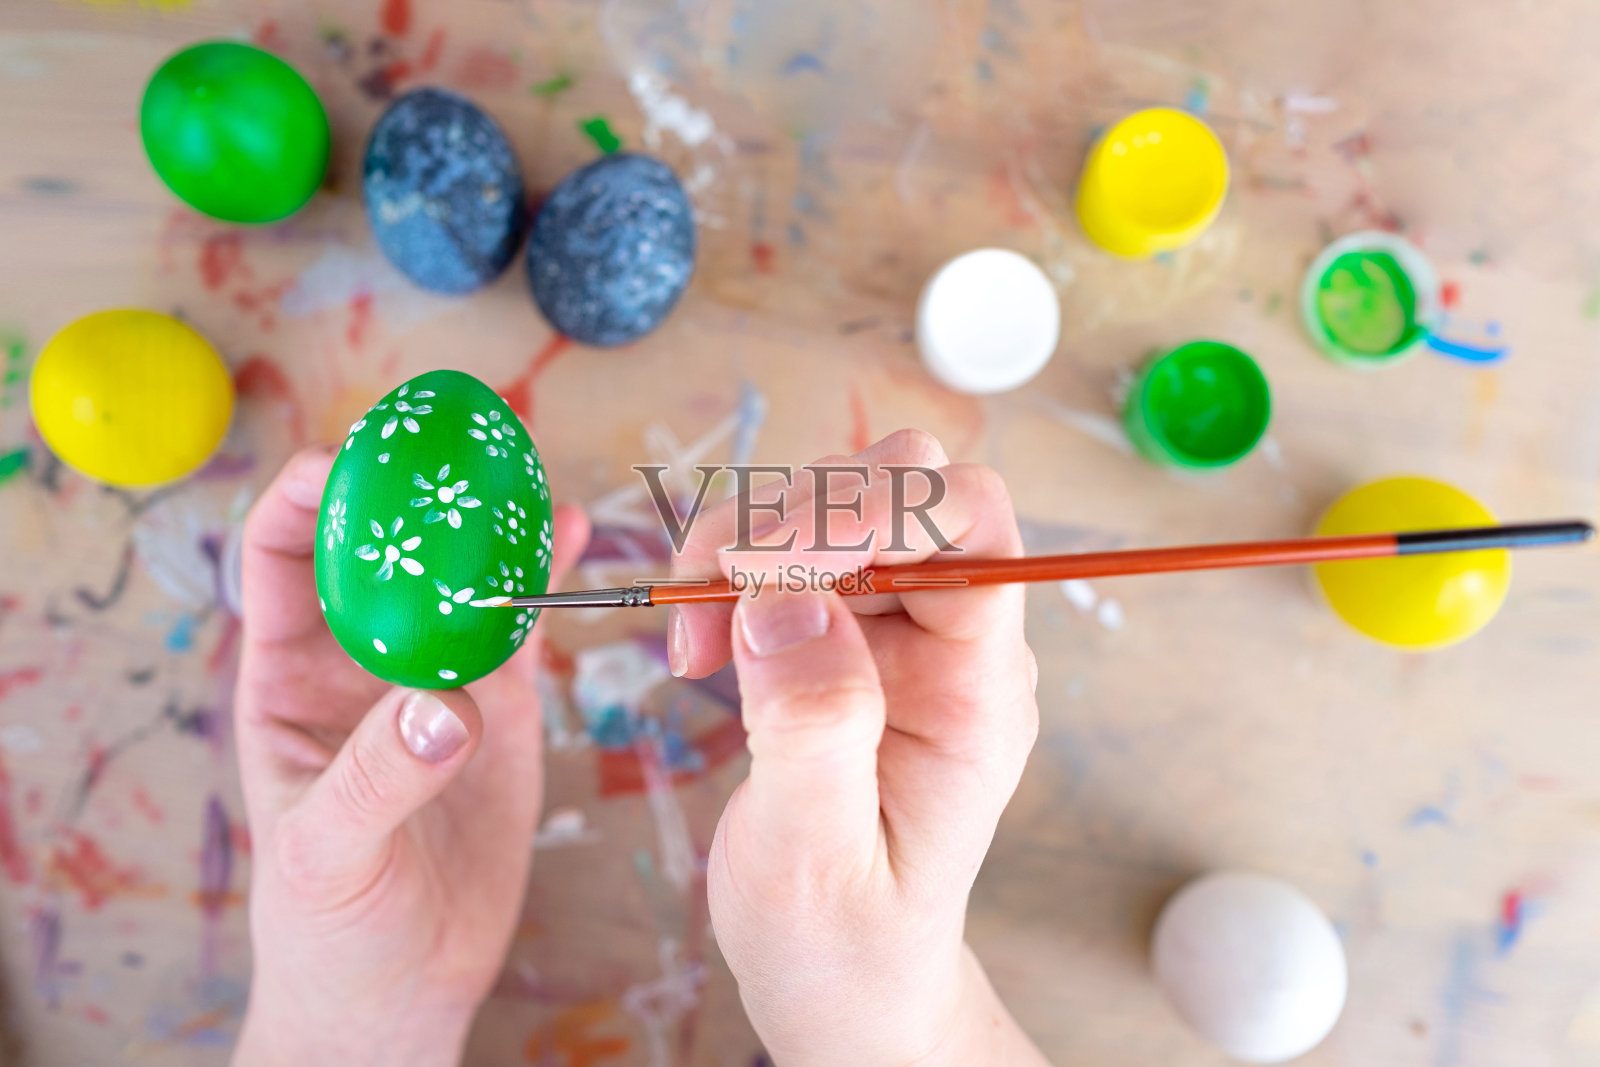 庆祝复活节的概念。女人的手在一个绿色的鸡蛋上画上花朵图案。有油漆罐和彩色彩蛋的工作场所照片摄影图片